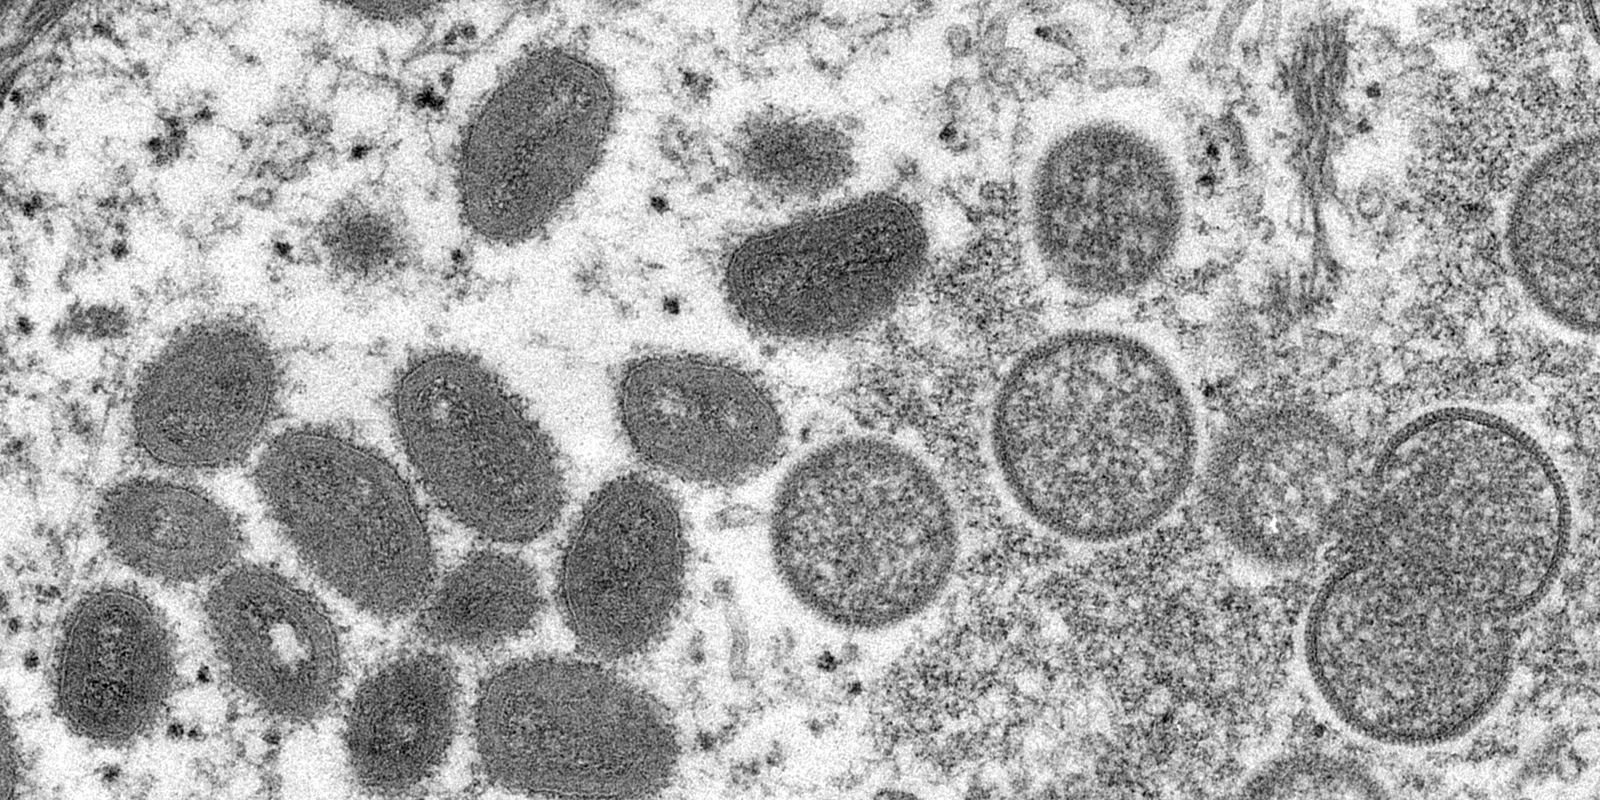 Macaé investiga suspeita de varíola dos macacos